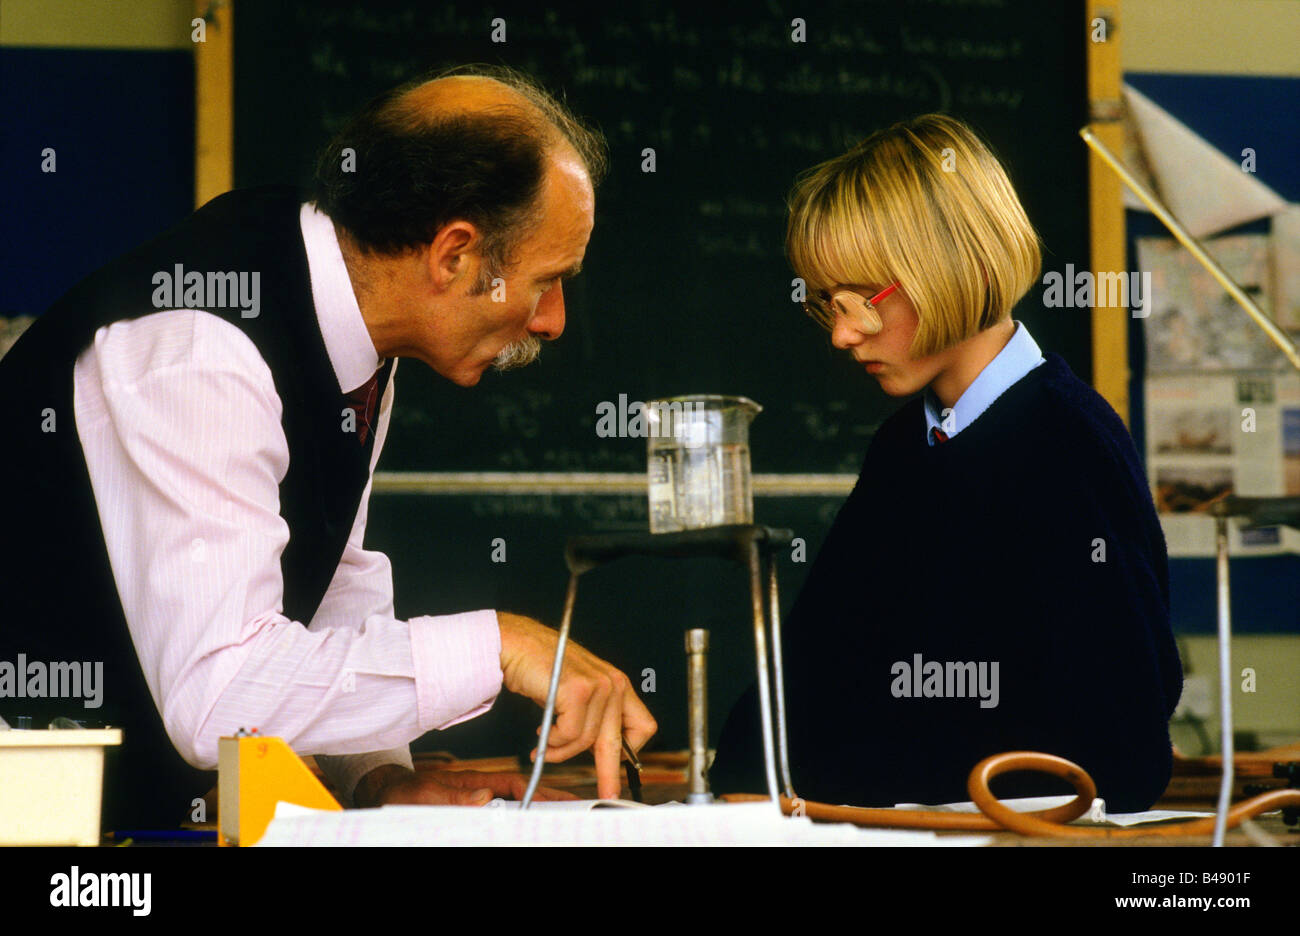 L'école secondaire de Holyrood, Glasgow. Professeur de sciences en discussion avec une fille étudiant dans le laboratoire de sciences. Banque D'Images